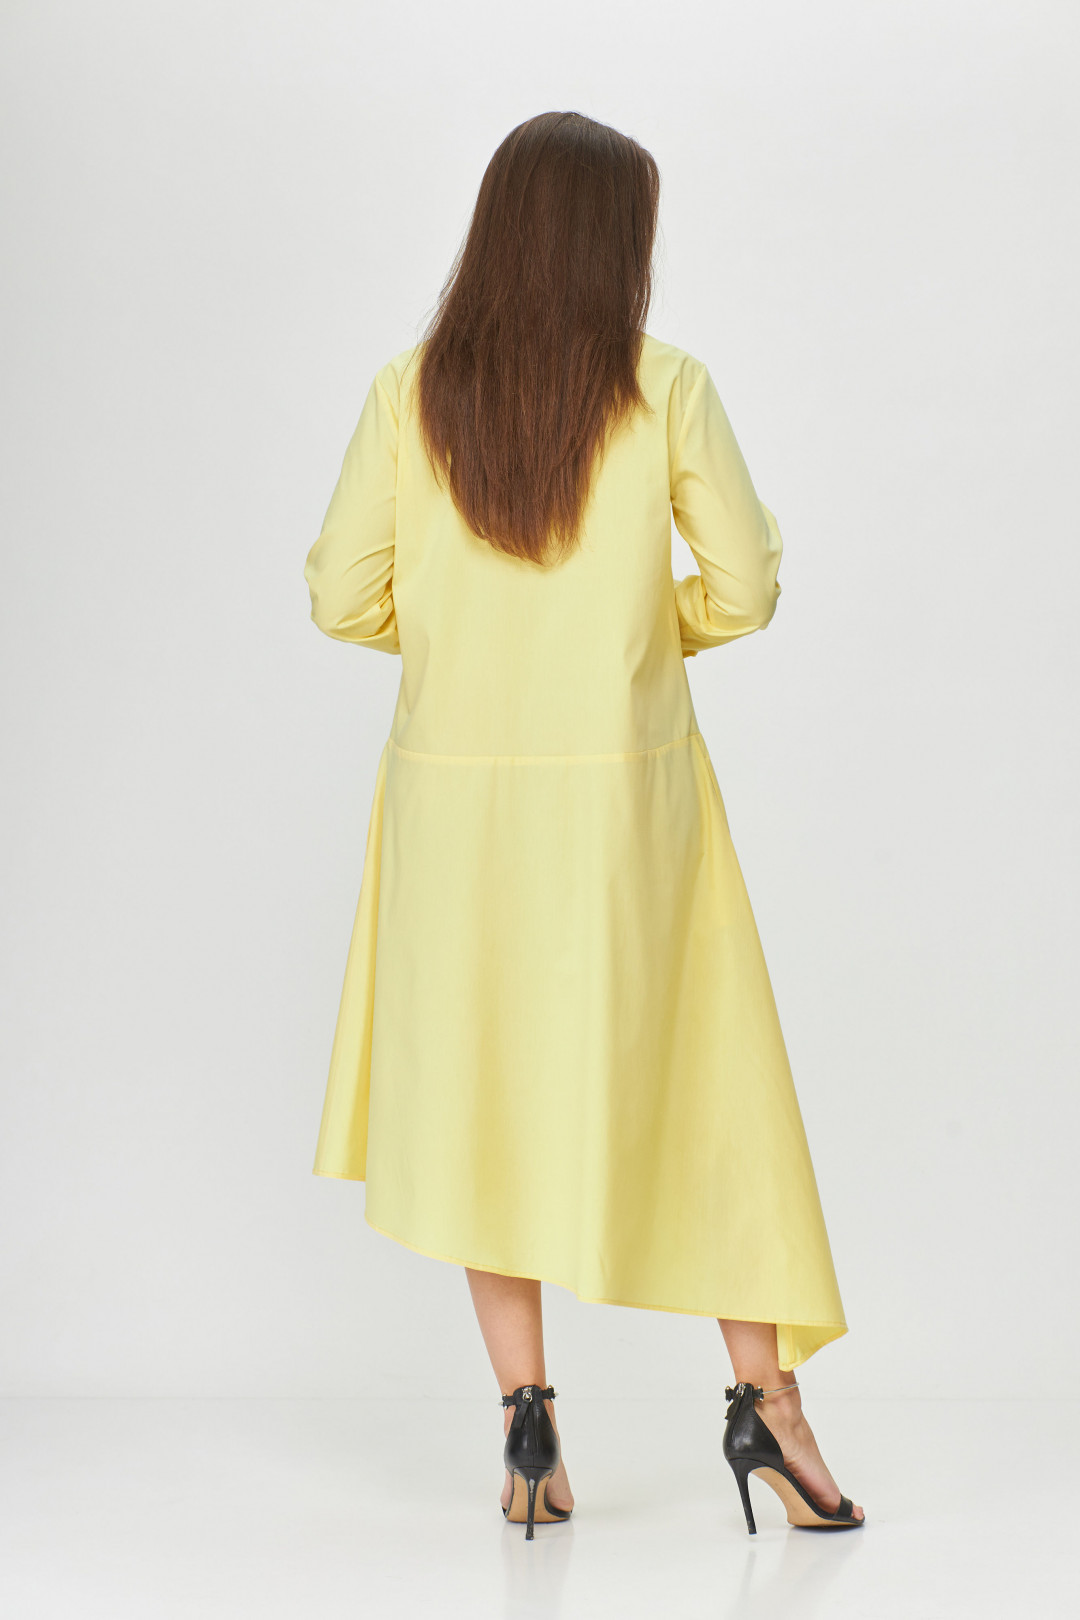 Платье Abbi style 1009 желтый